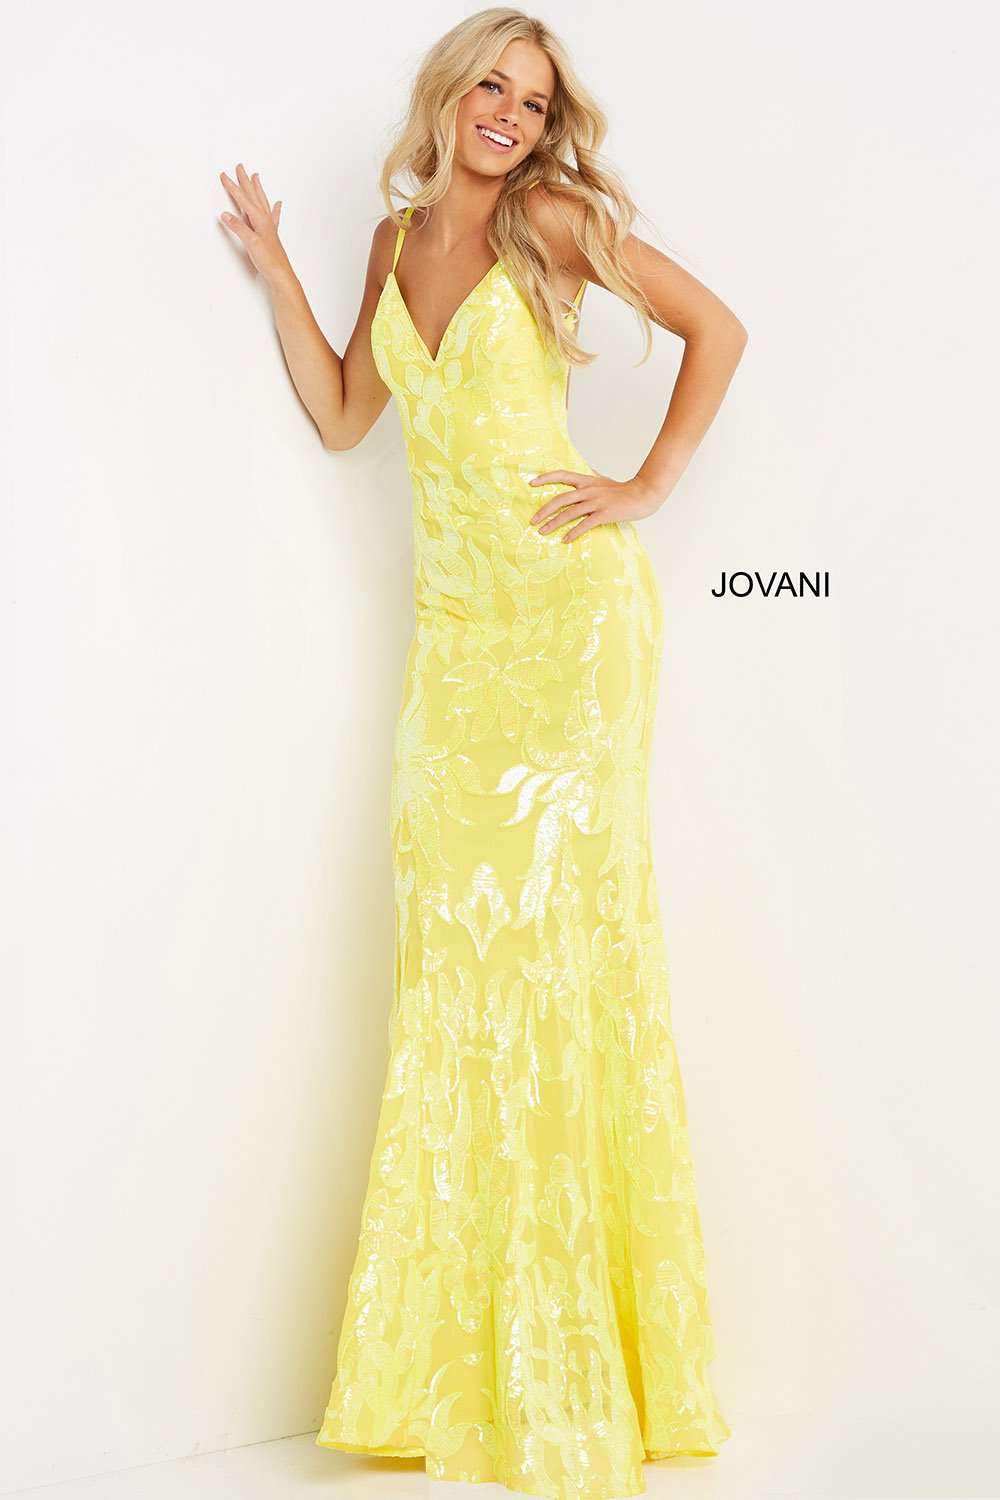 Fitted Embellished V Neck Prom Dress Jovani 07784 - Morvarieds Fashion